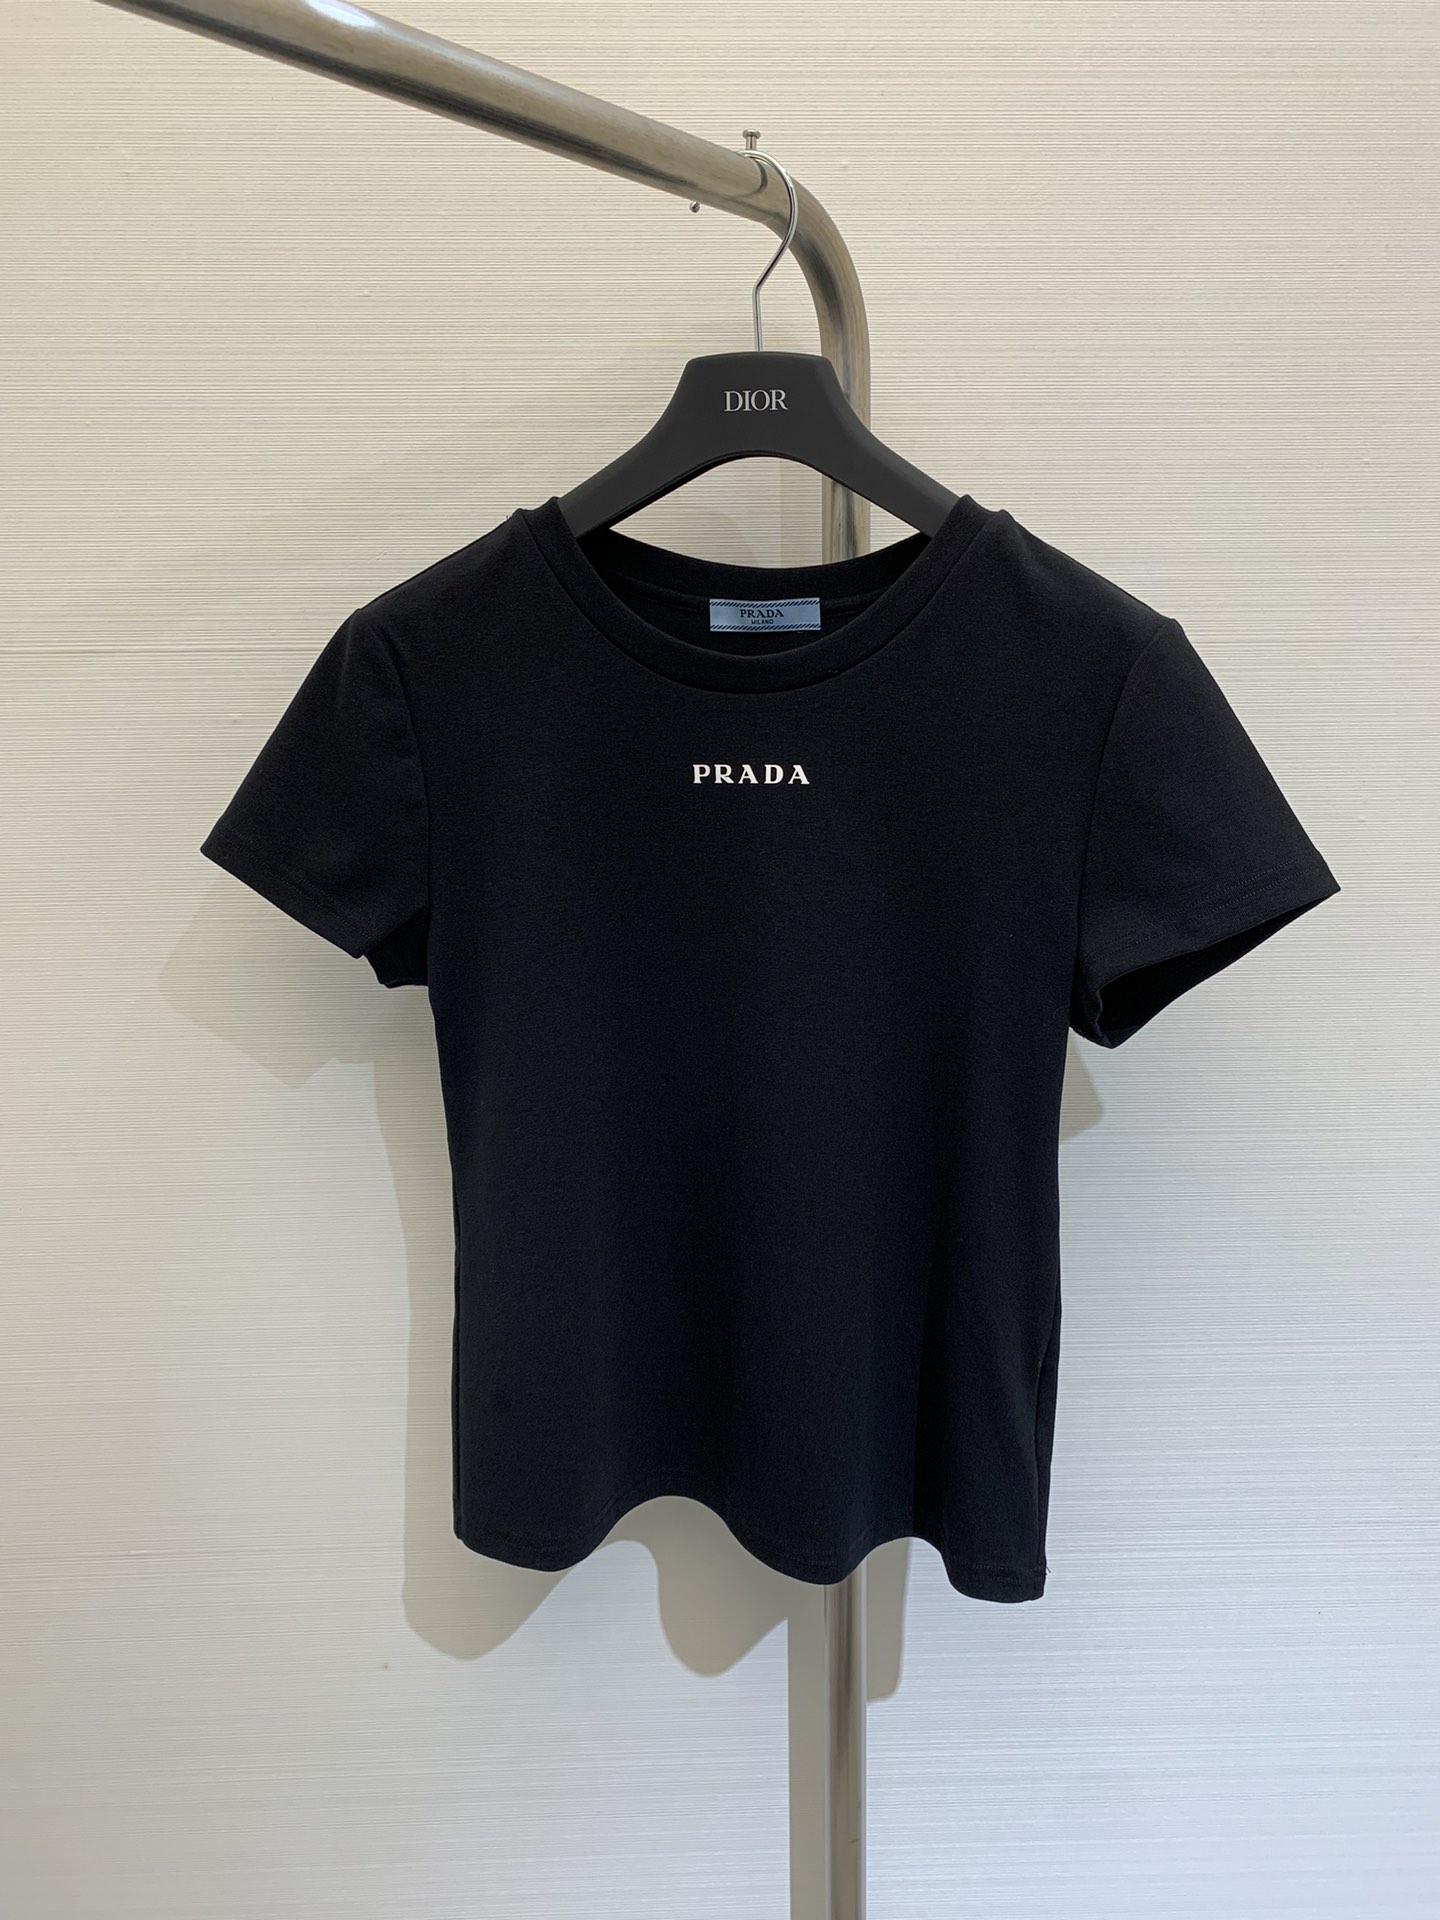 Qualité parfaite
 Prada Vêtements T-Shirt Noir Gris Blanc Série d’été Peu importe